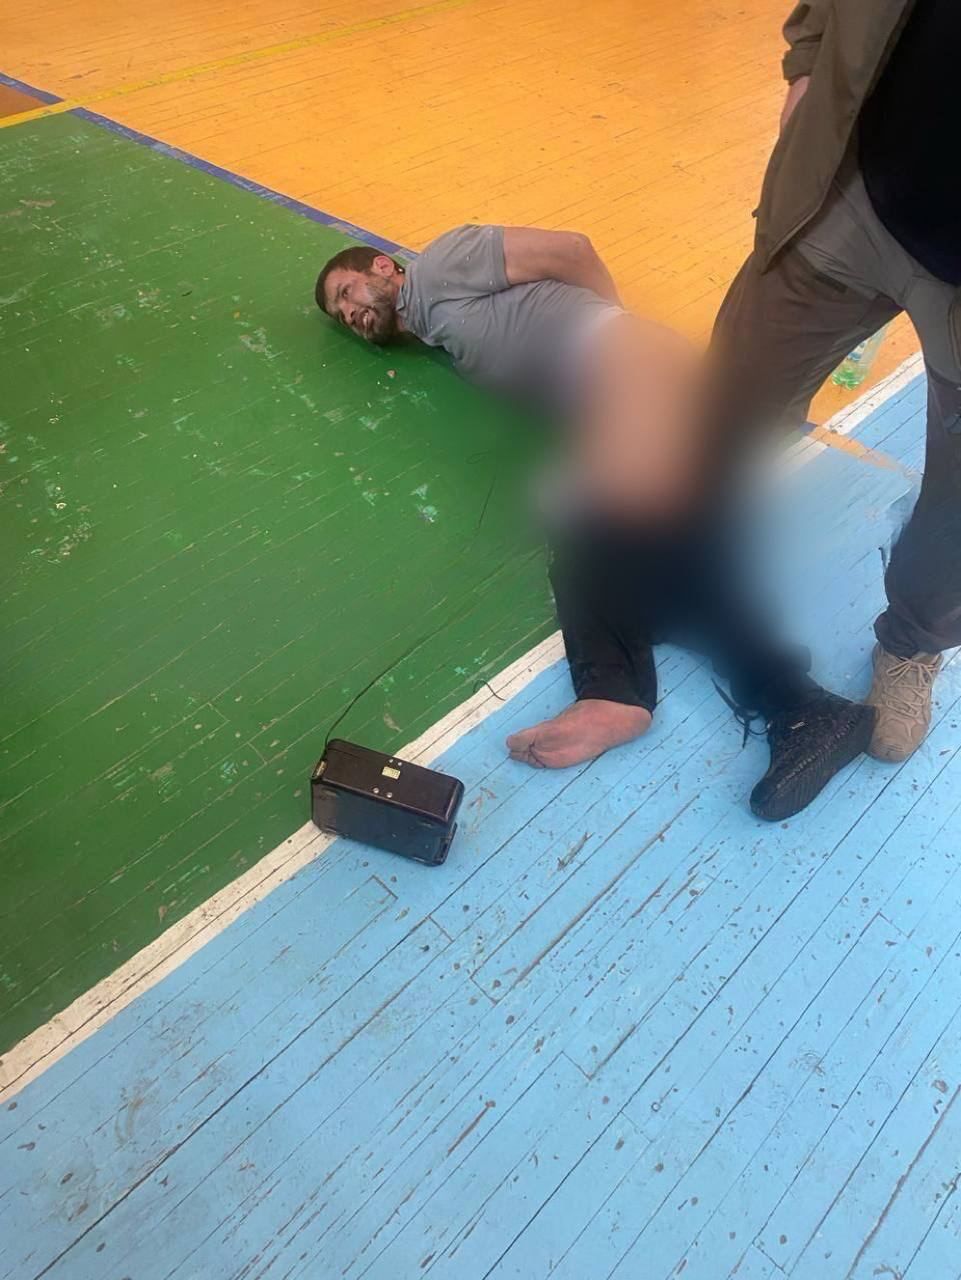 Появилось фото, где один из террористов лежит на полу, к нему подключены провода